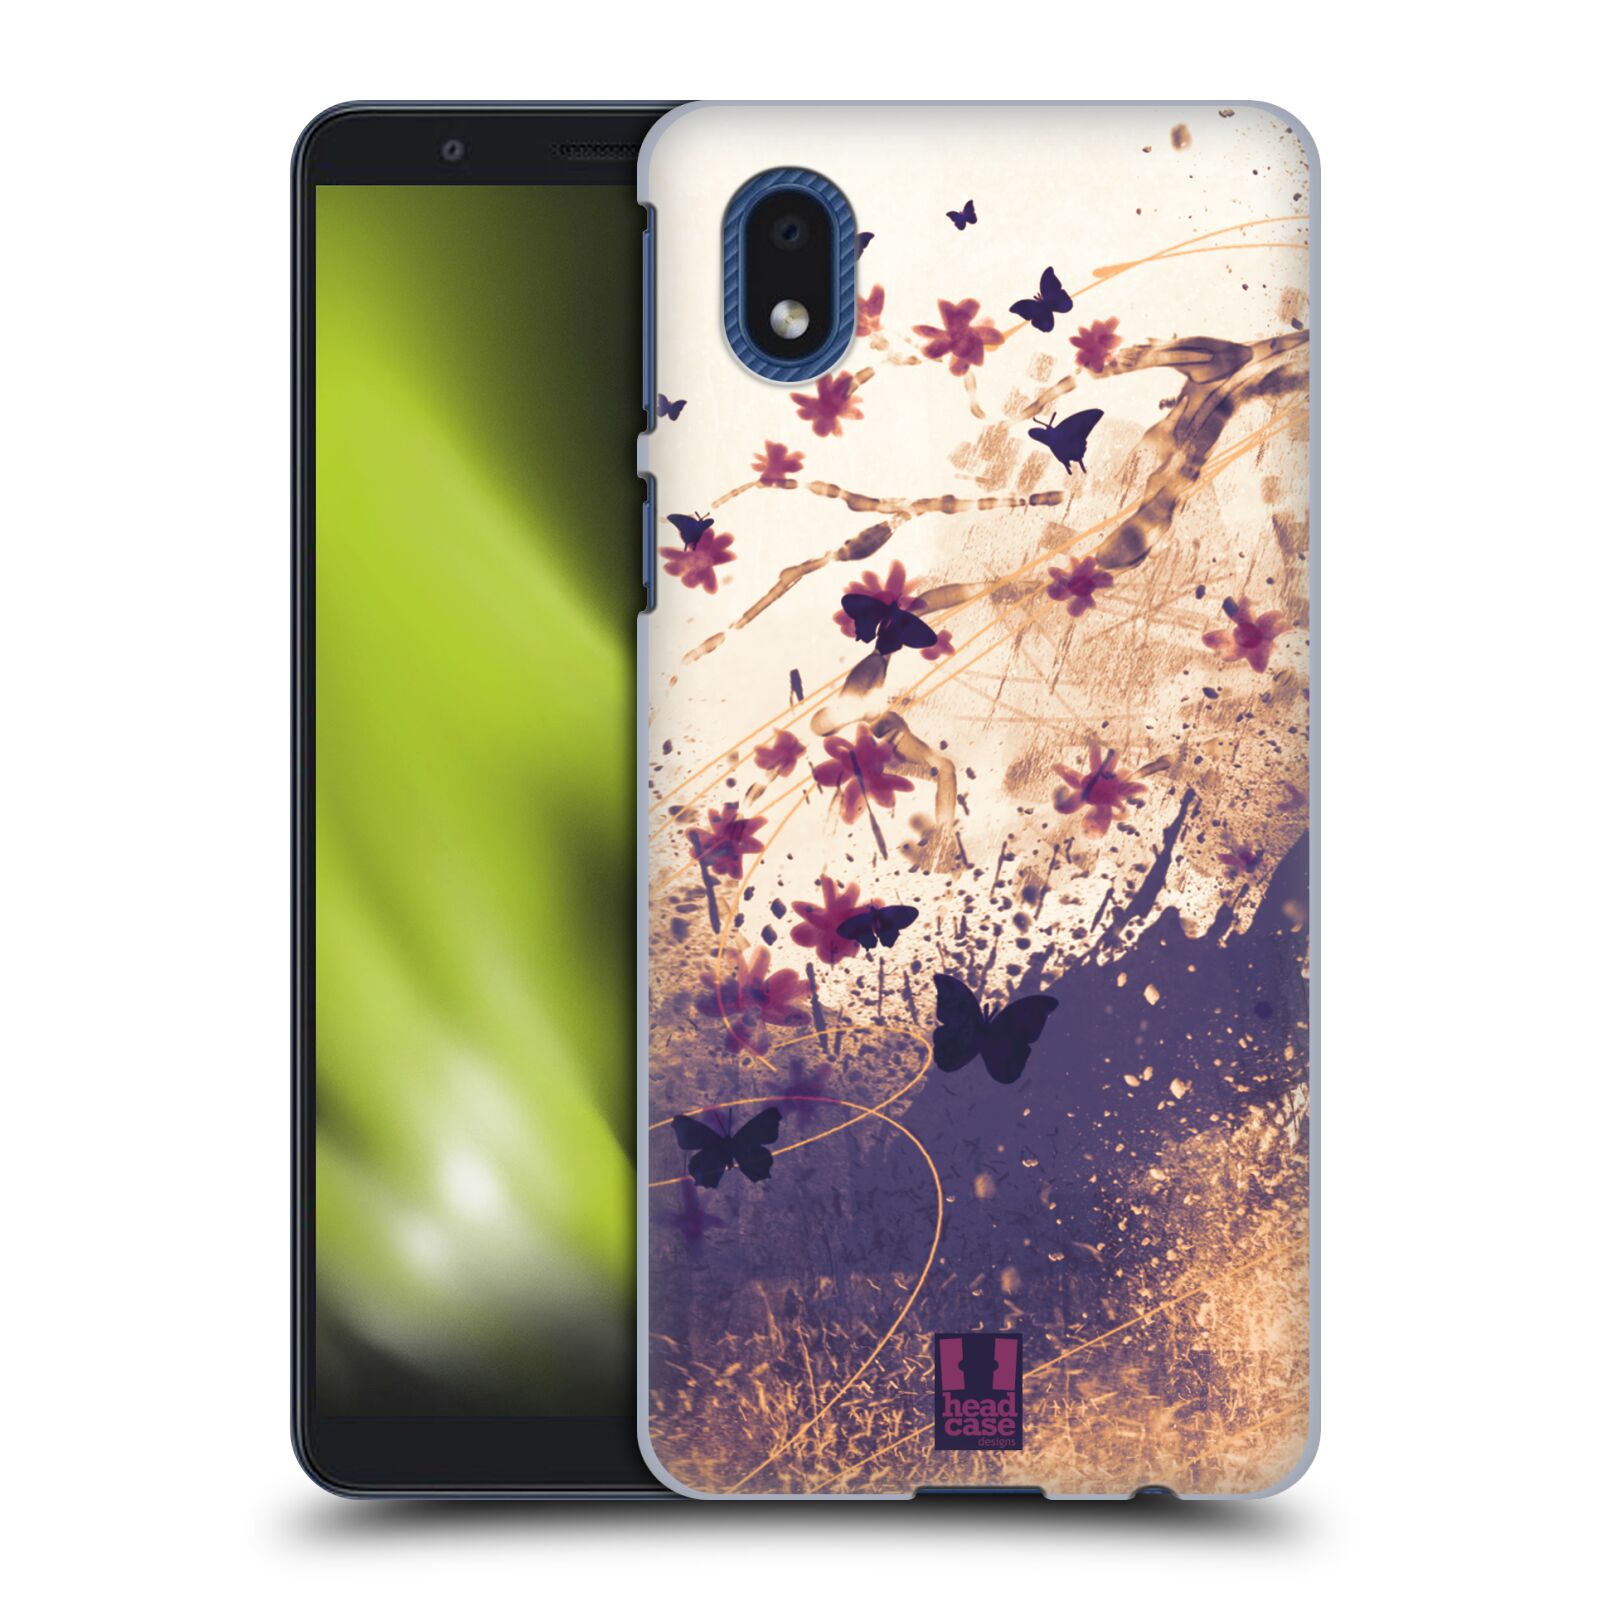 Zadní obal pro mobil Samsung Galaxy A01 CORE - HEAD CASE - Barevné květy a motýlci